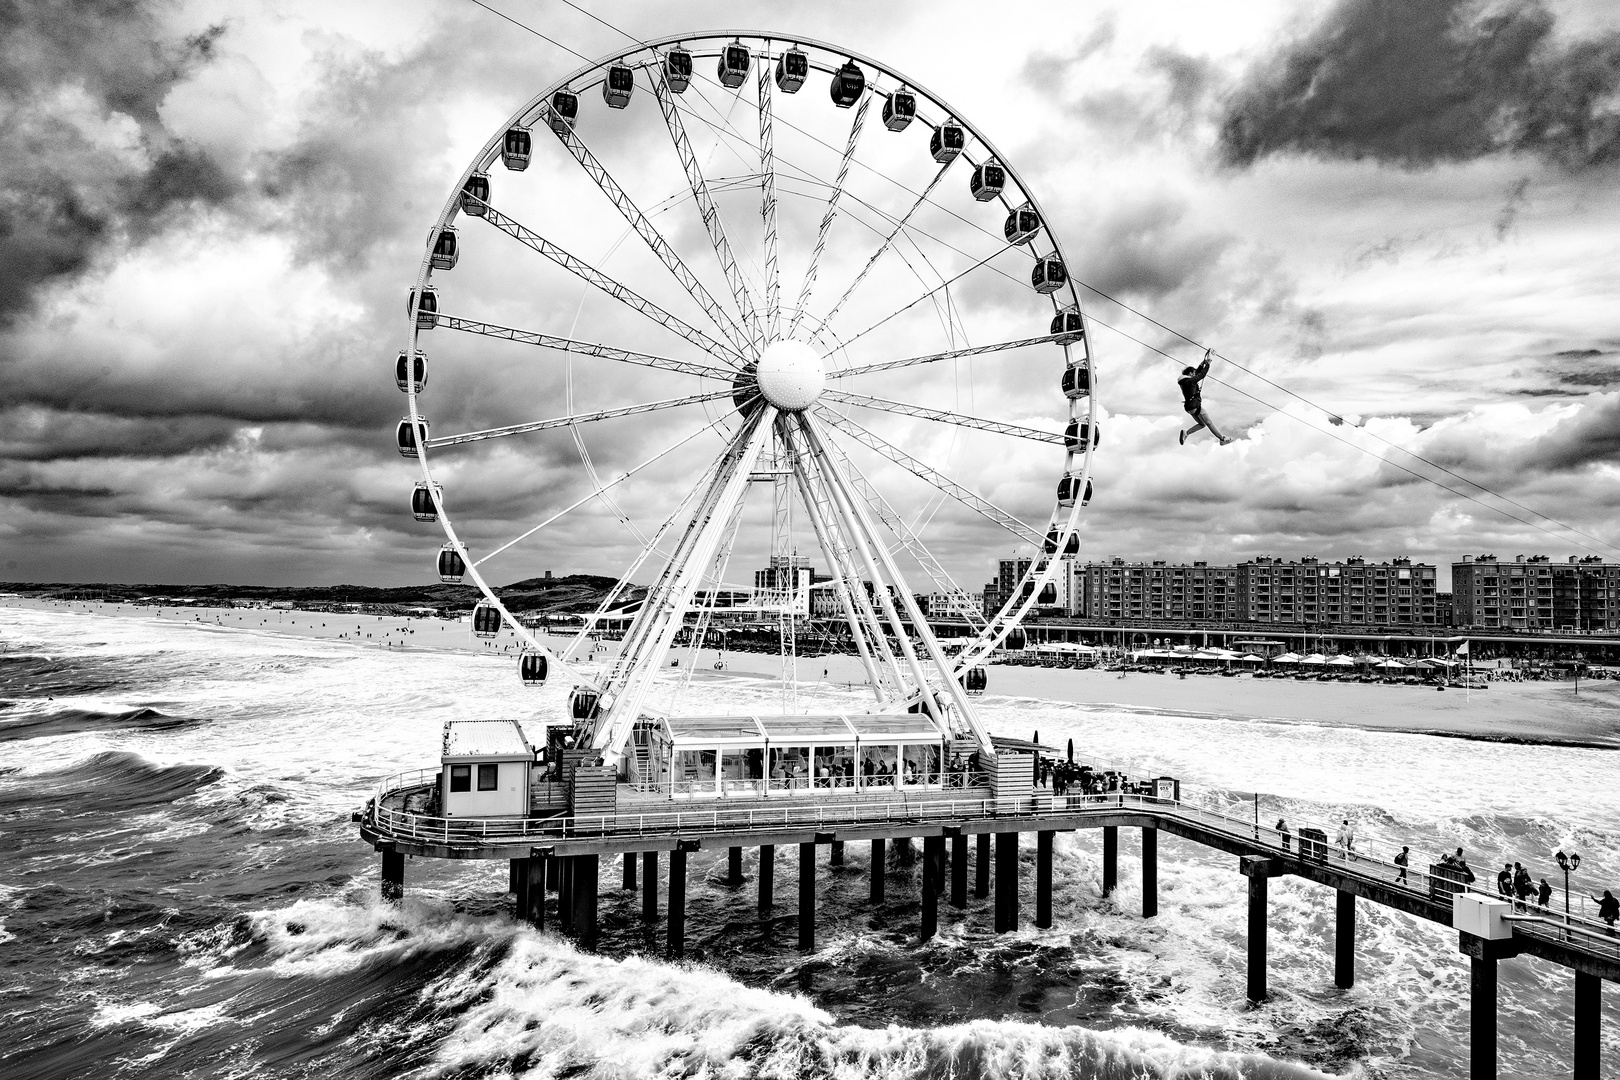  Scheveningen - Das Riesenrad am Strand